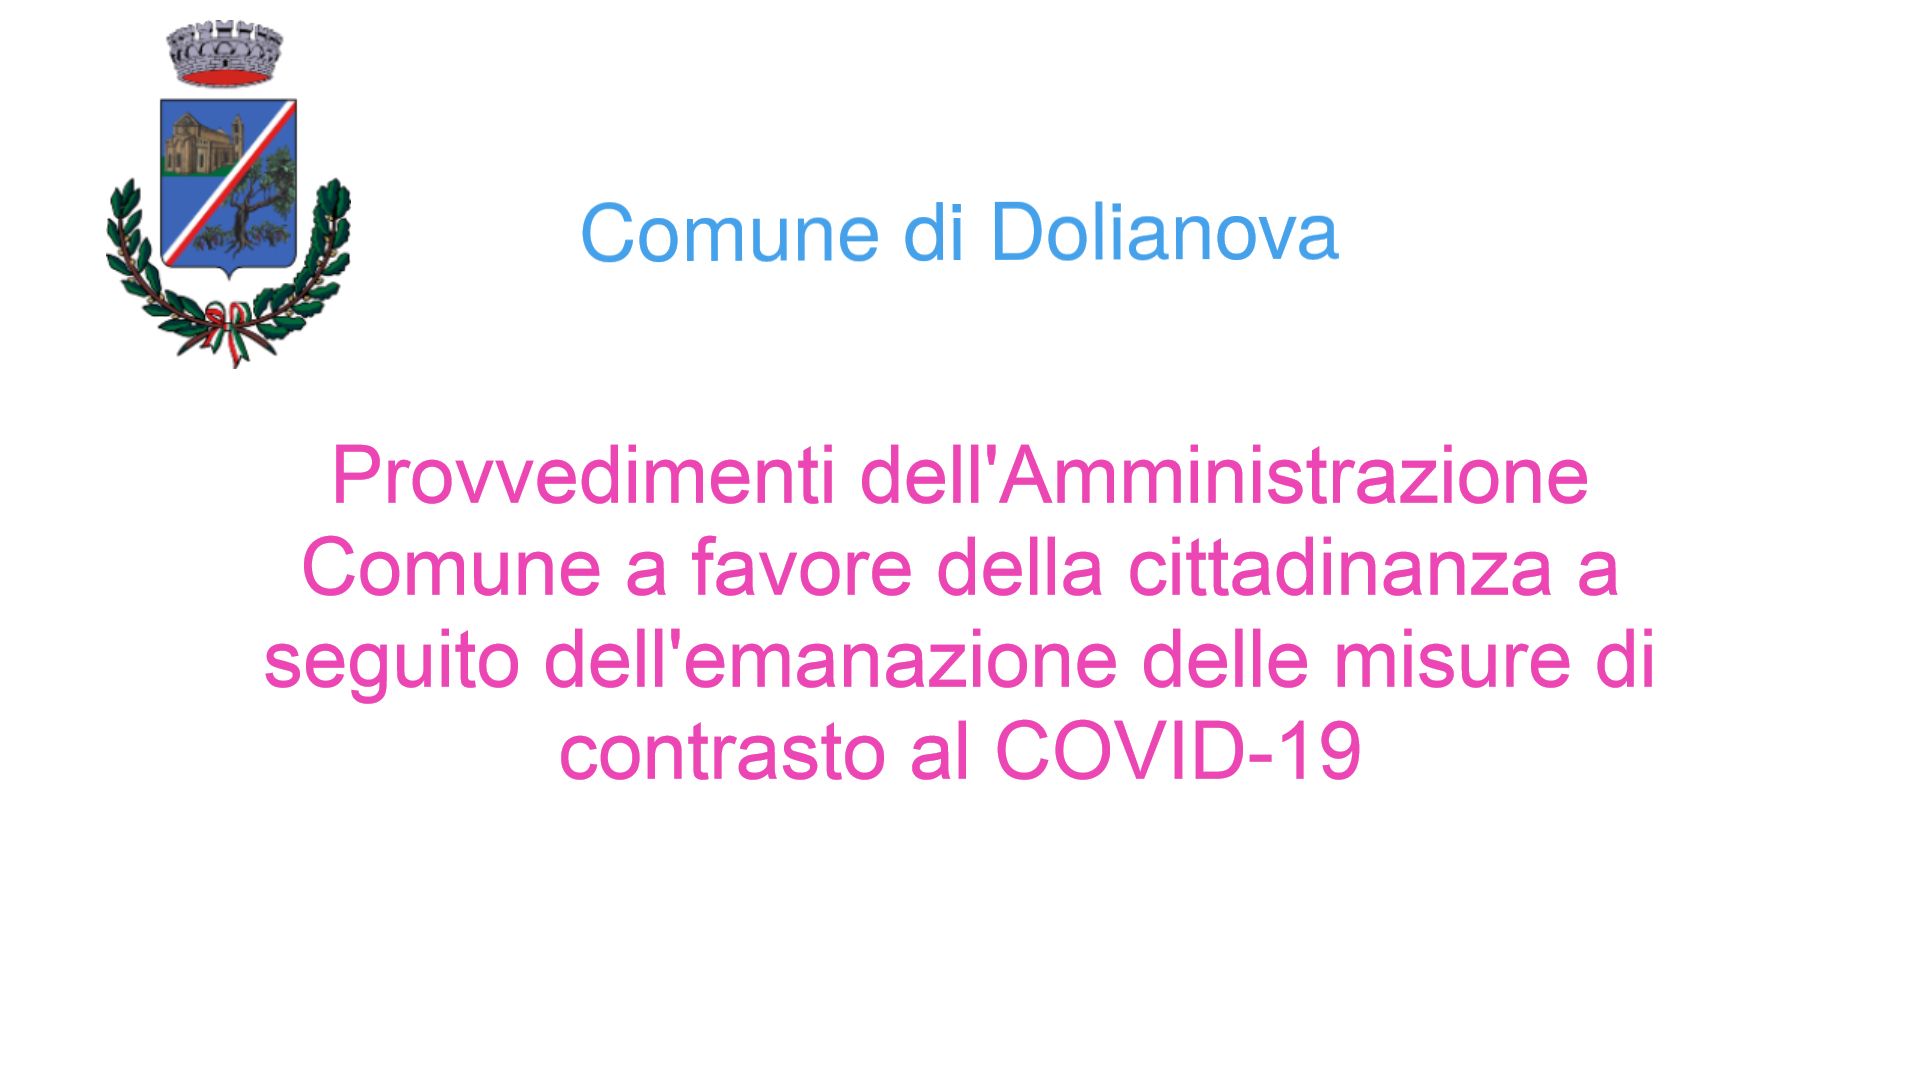 # DOLIANOVA NON SI FERMA! - Provvedimenti promossi dall’Amministrazione Comunale a supporto della cittadinanza a seguito dell’emanazione delle misure di contrasto del COVID-19 (Coronavirus)